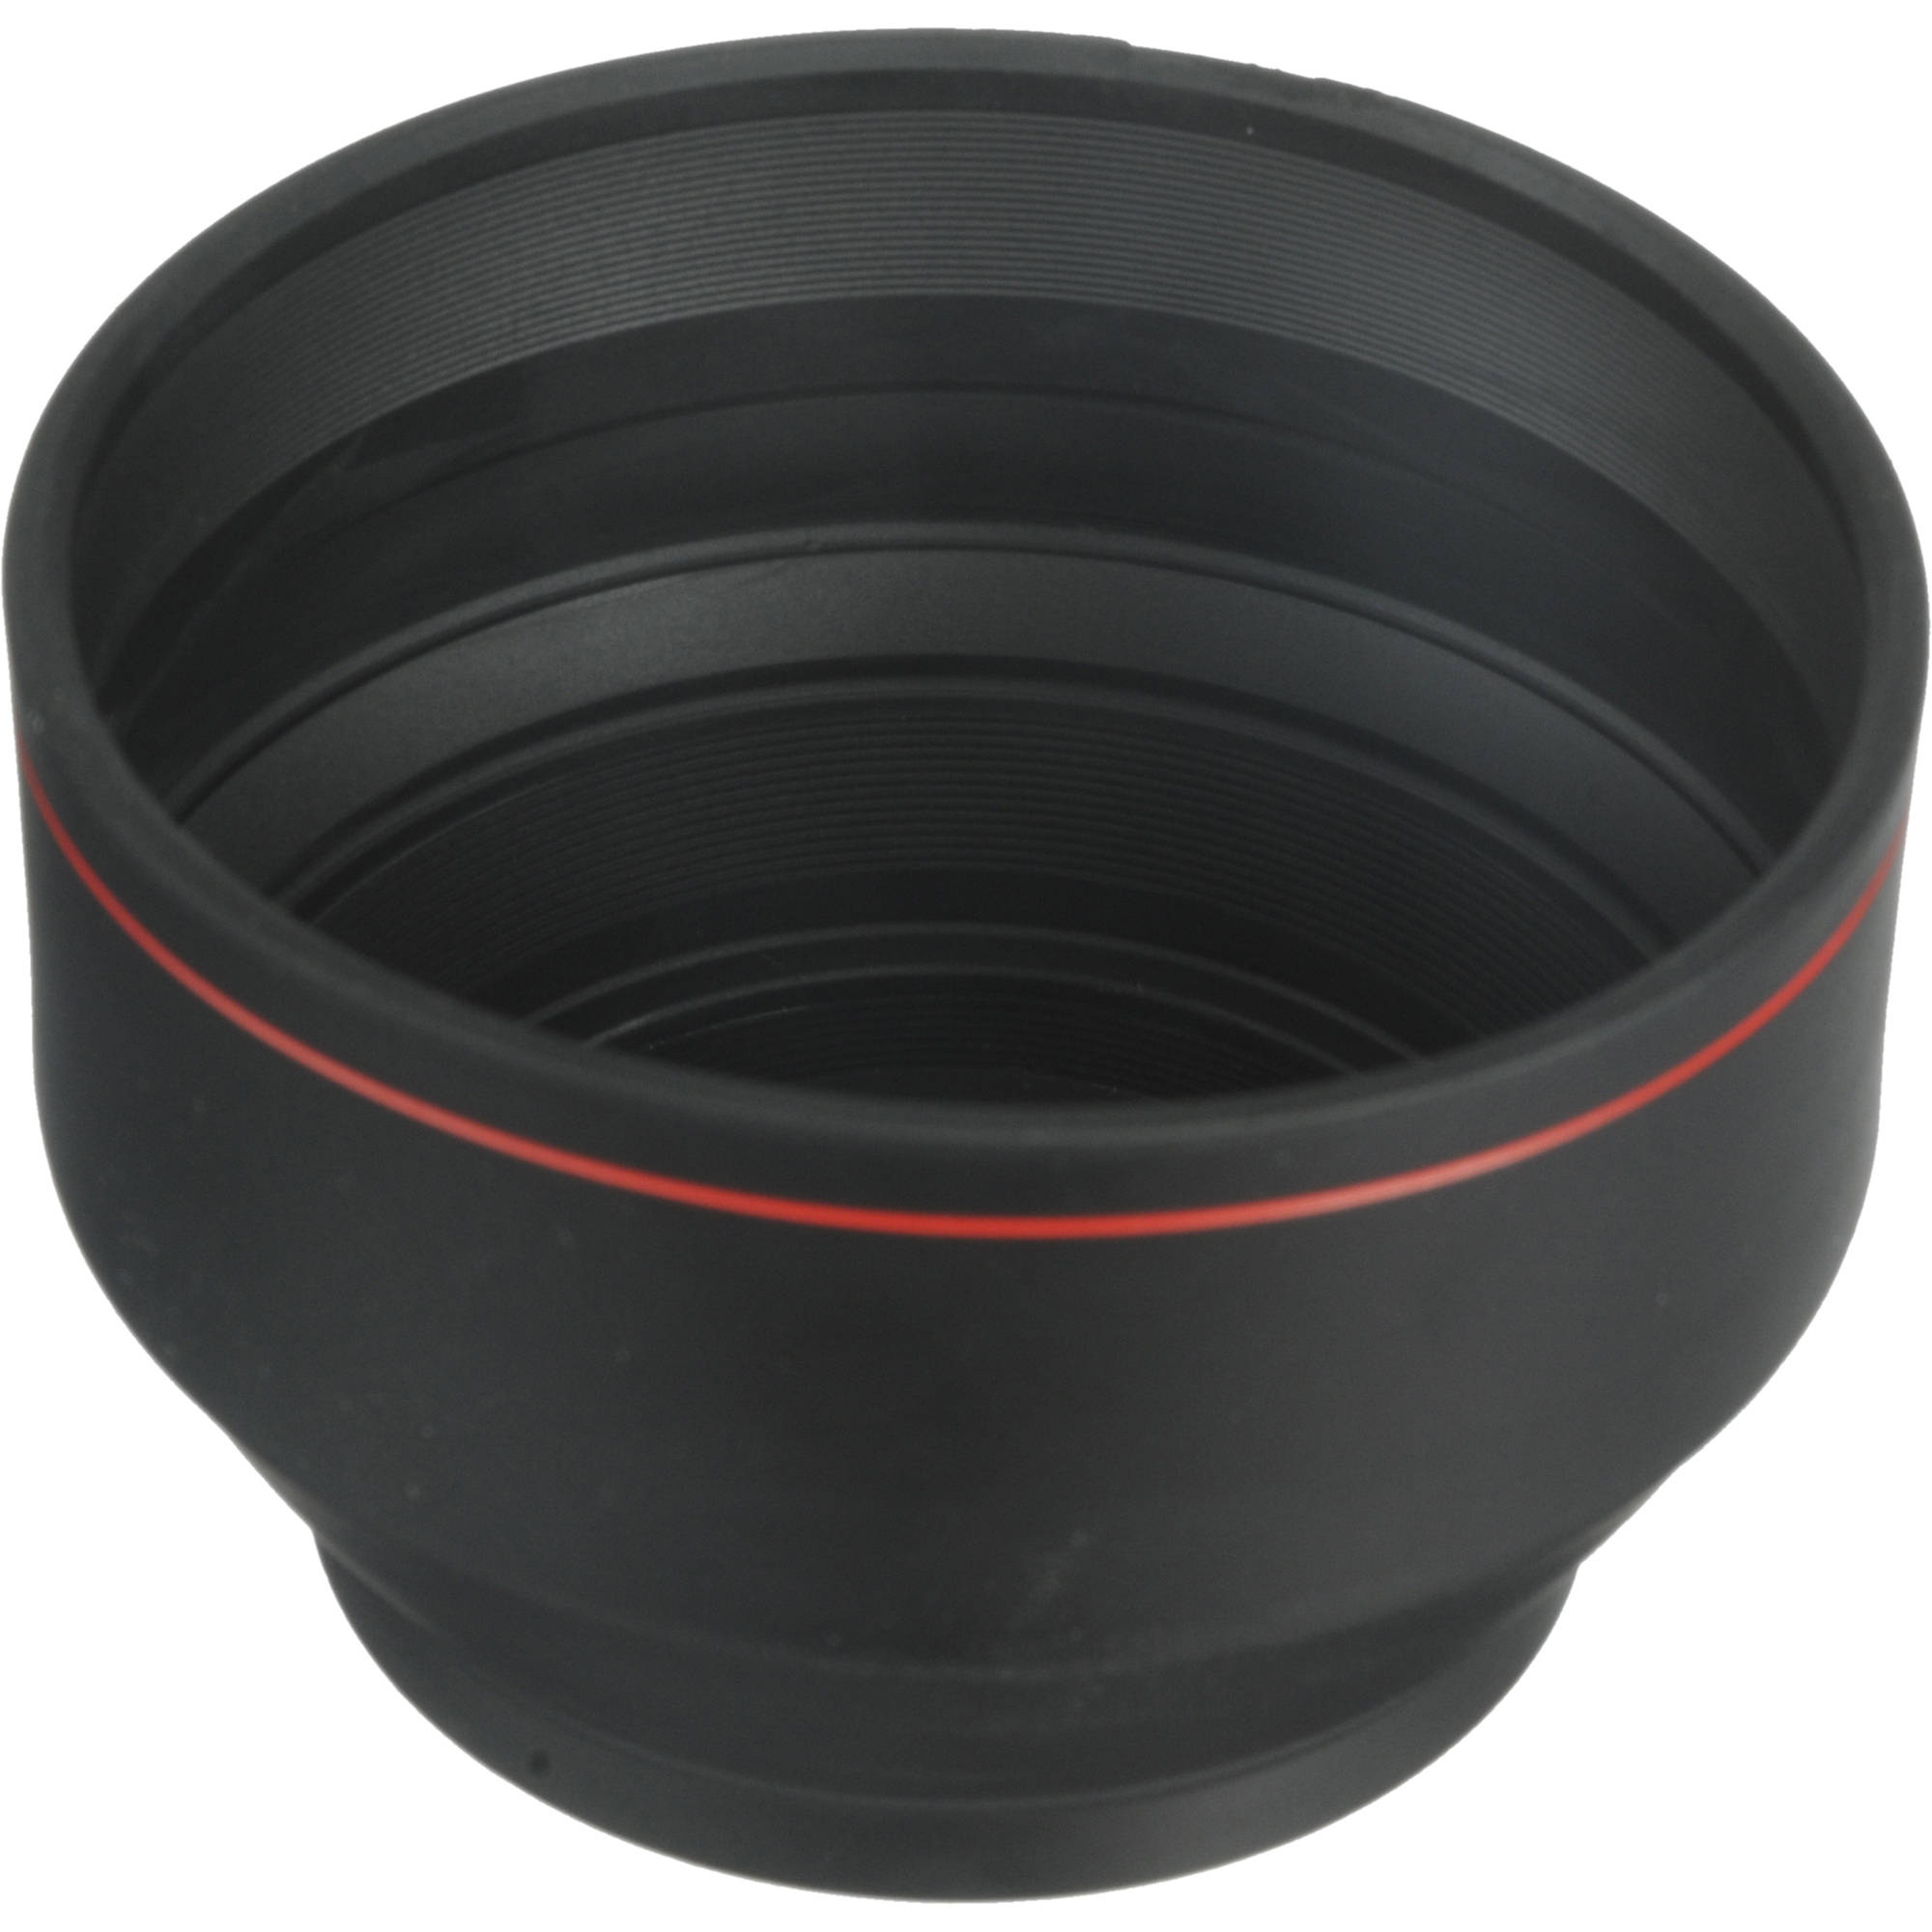 Hoya 52mm Screw-In Rubber Zoom Lens Hood for 35mm to 200mm Lenses